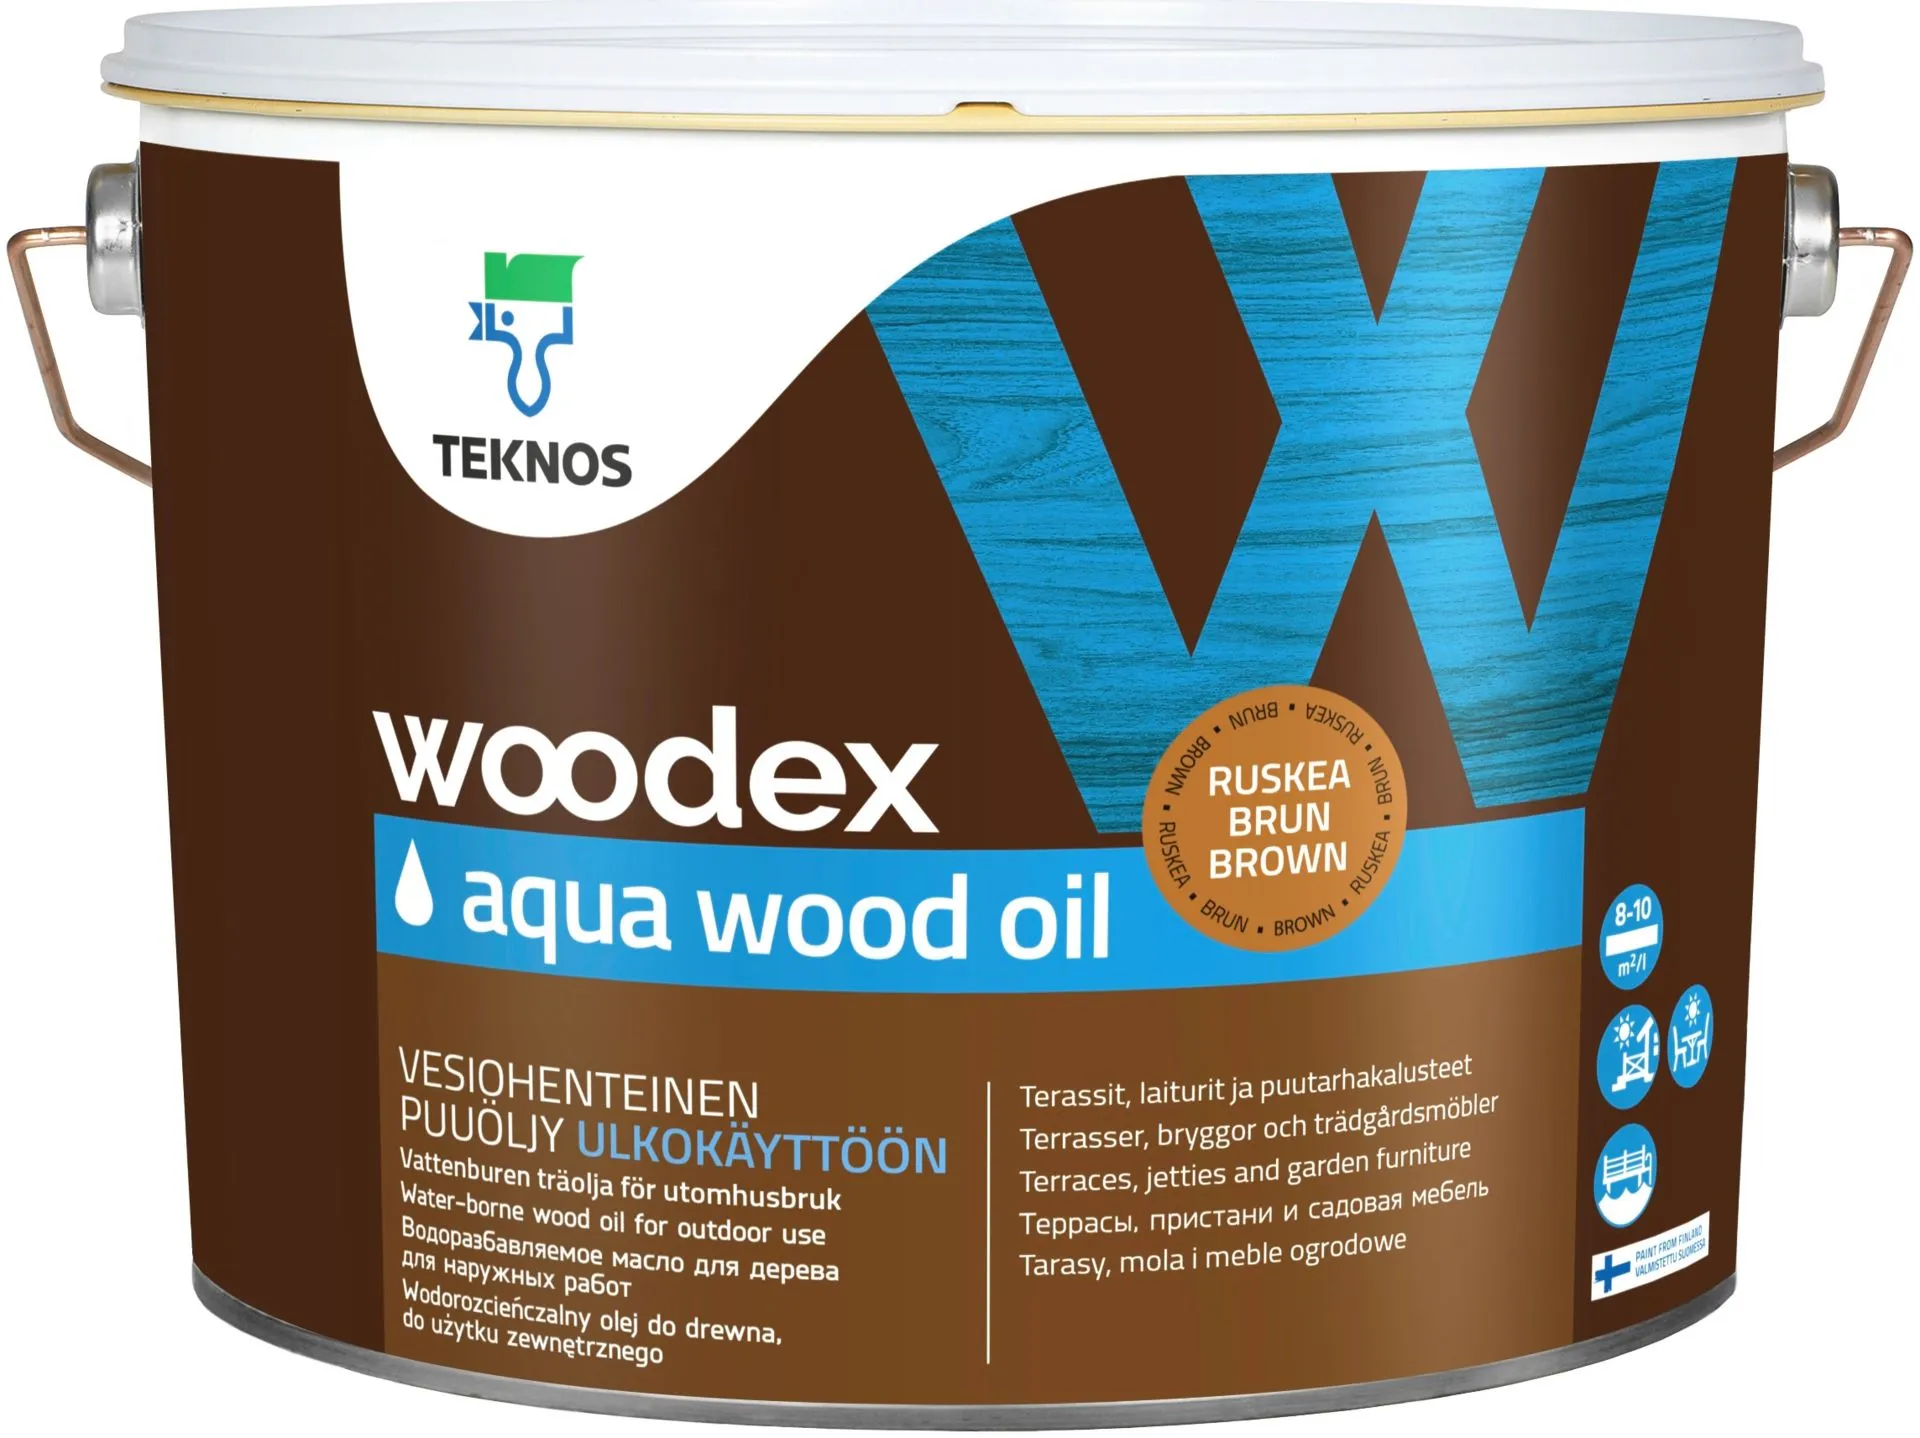 Teknos puuöljy Woodex Aqua Wood Oil 9 l ruskea